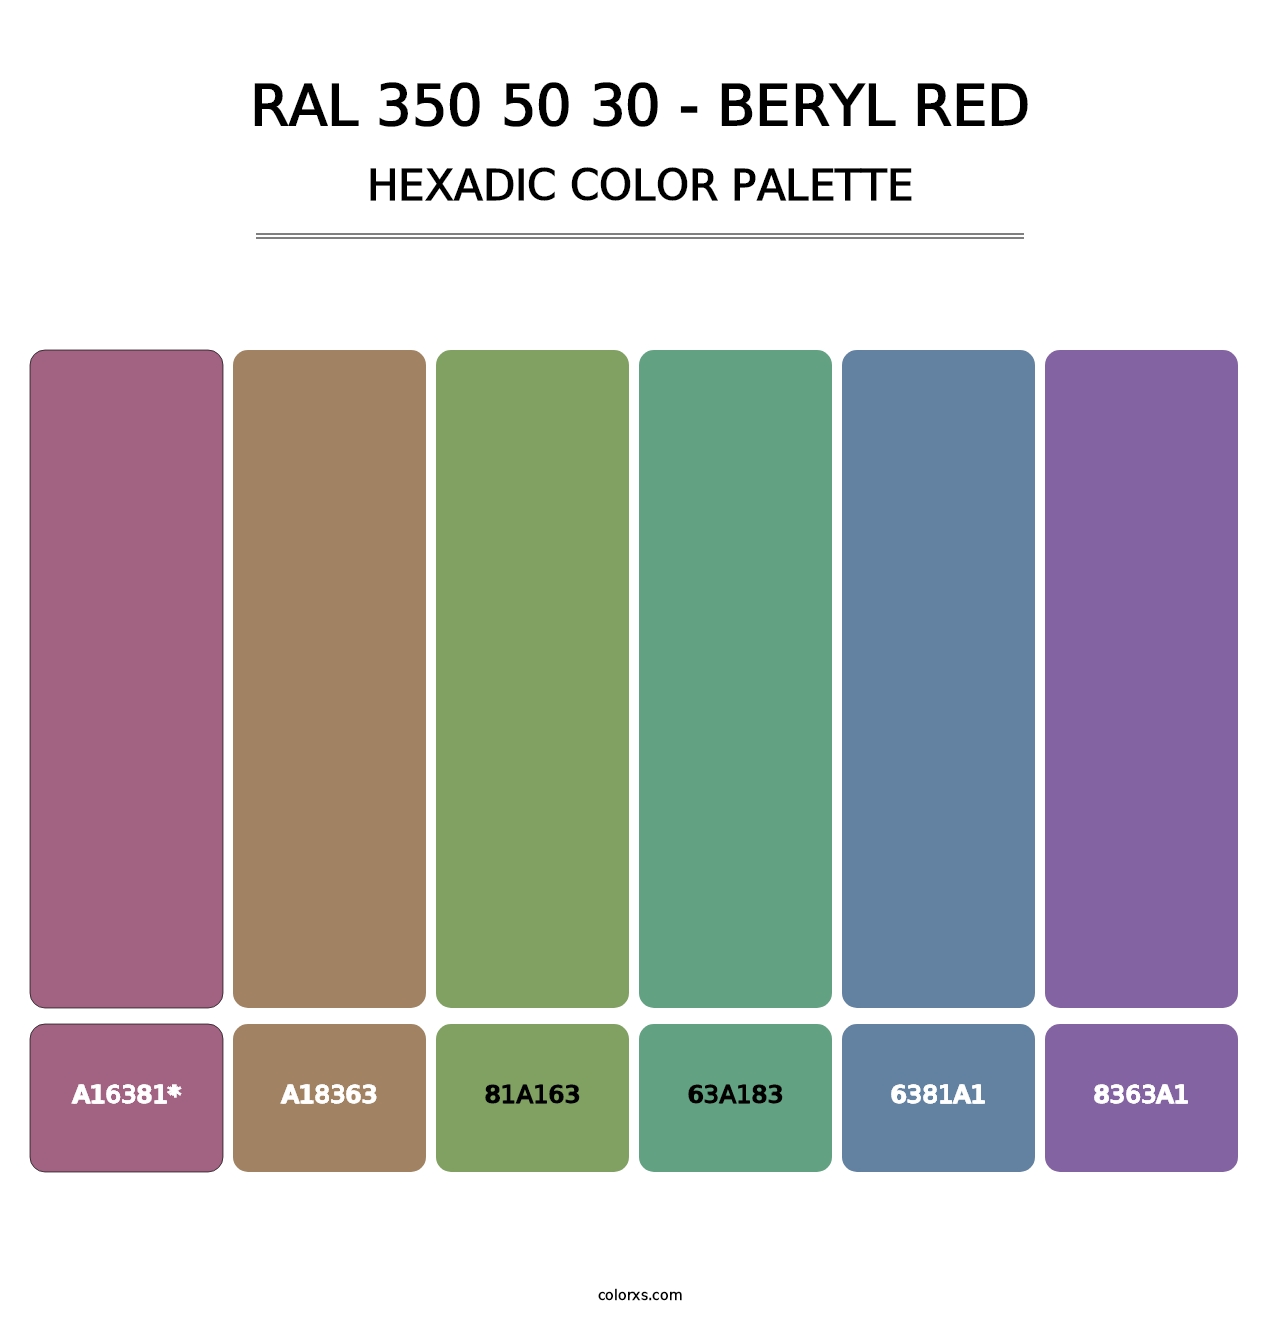 RAL 350 50 30 - Beryl Red - Hexadic Color Palette